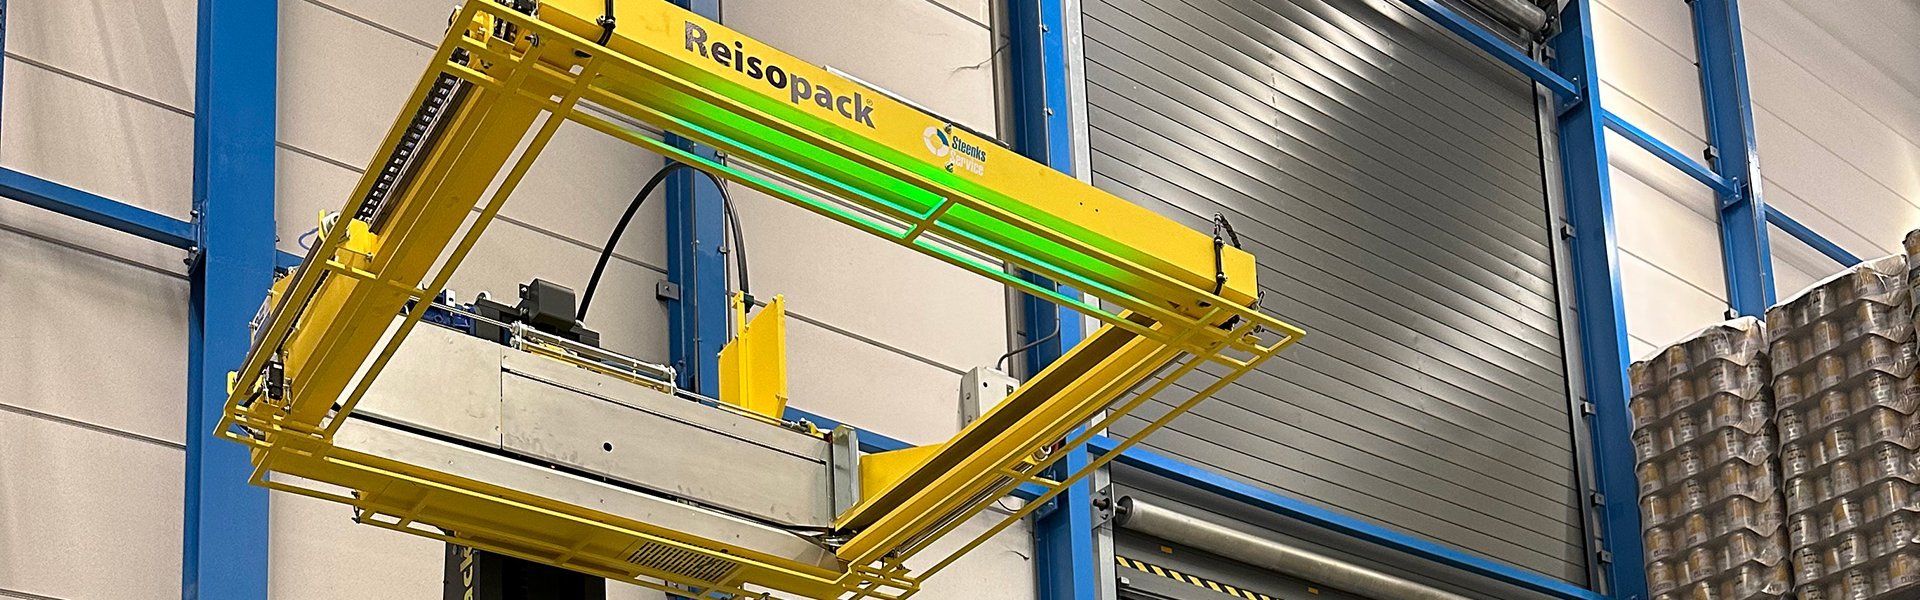 Reisopack Nederland plaatst Reisopack 2903 bij logistiek bierbedrijf